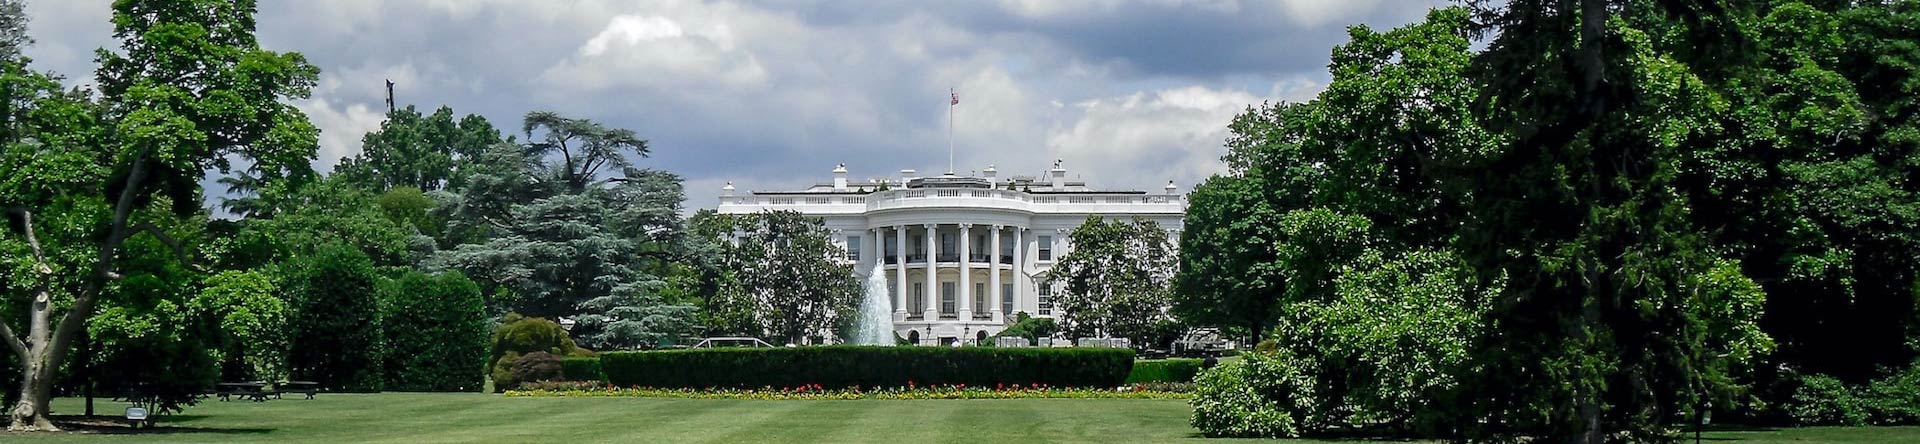 La Casa Blanca Washington D.C.